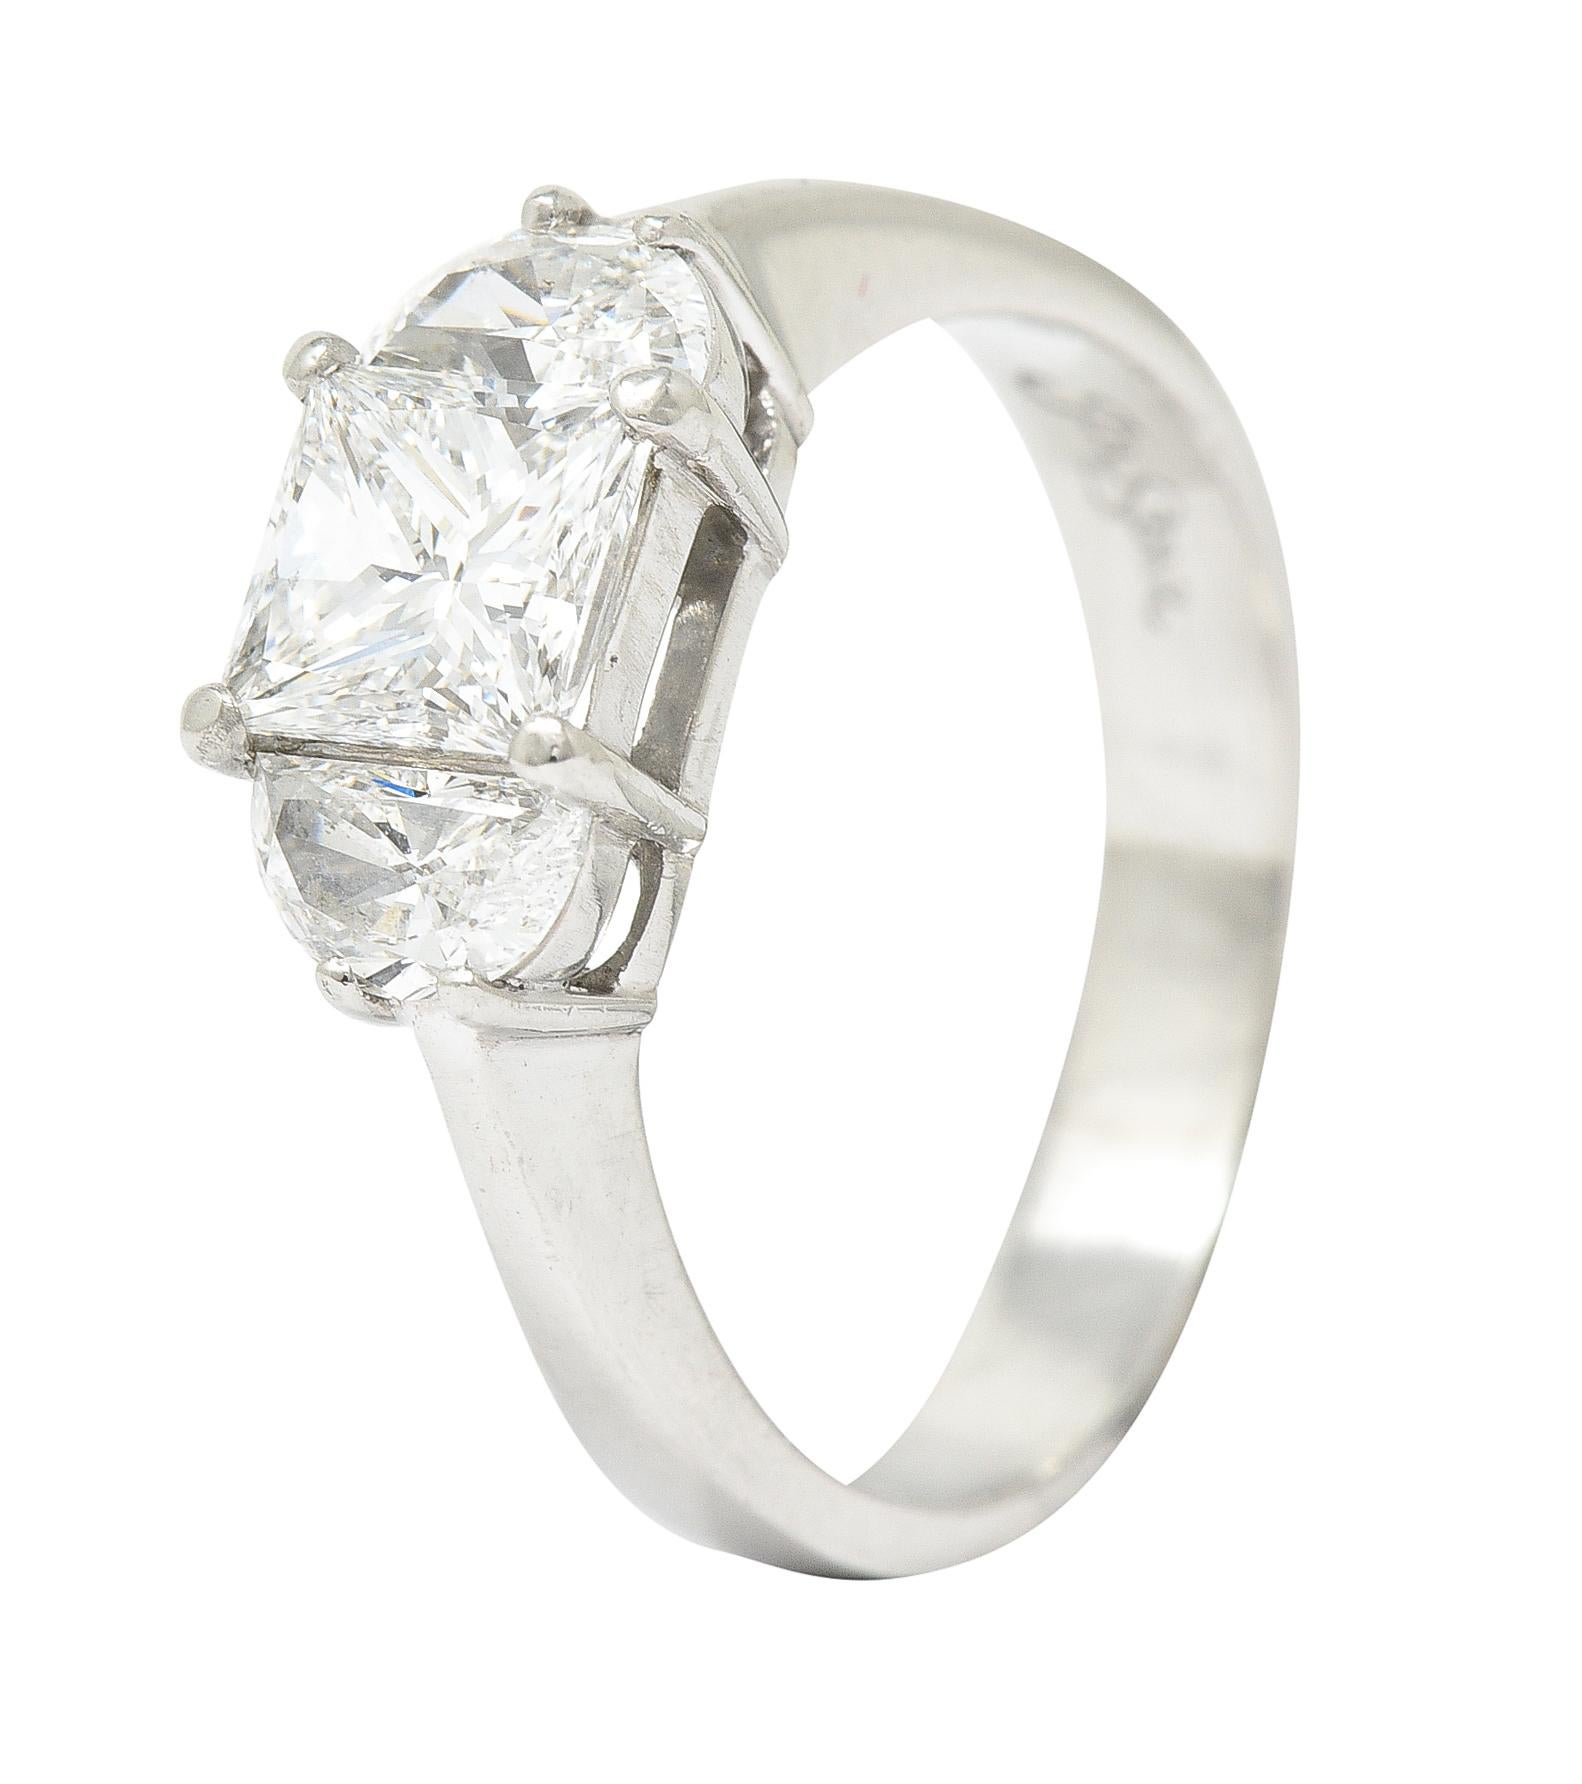 JB Star 1.55 Carats Princess Cut Diamond Platinum Engagement Ring GIA 4